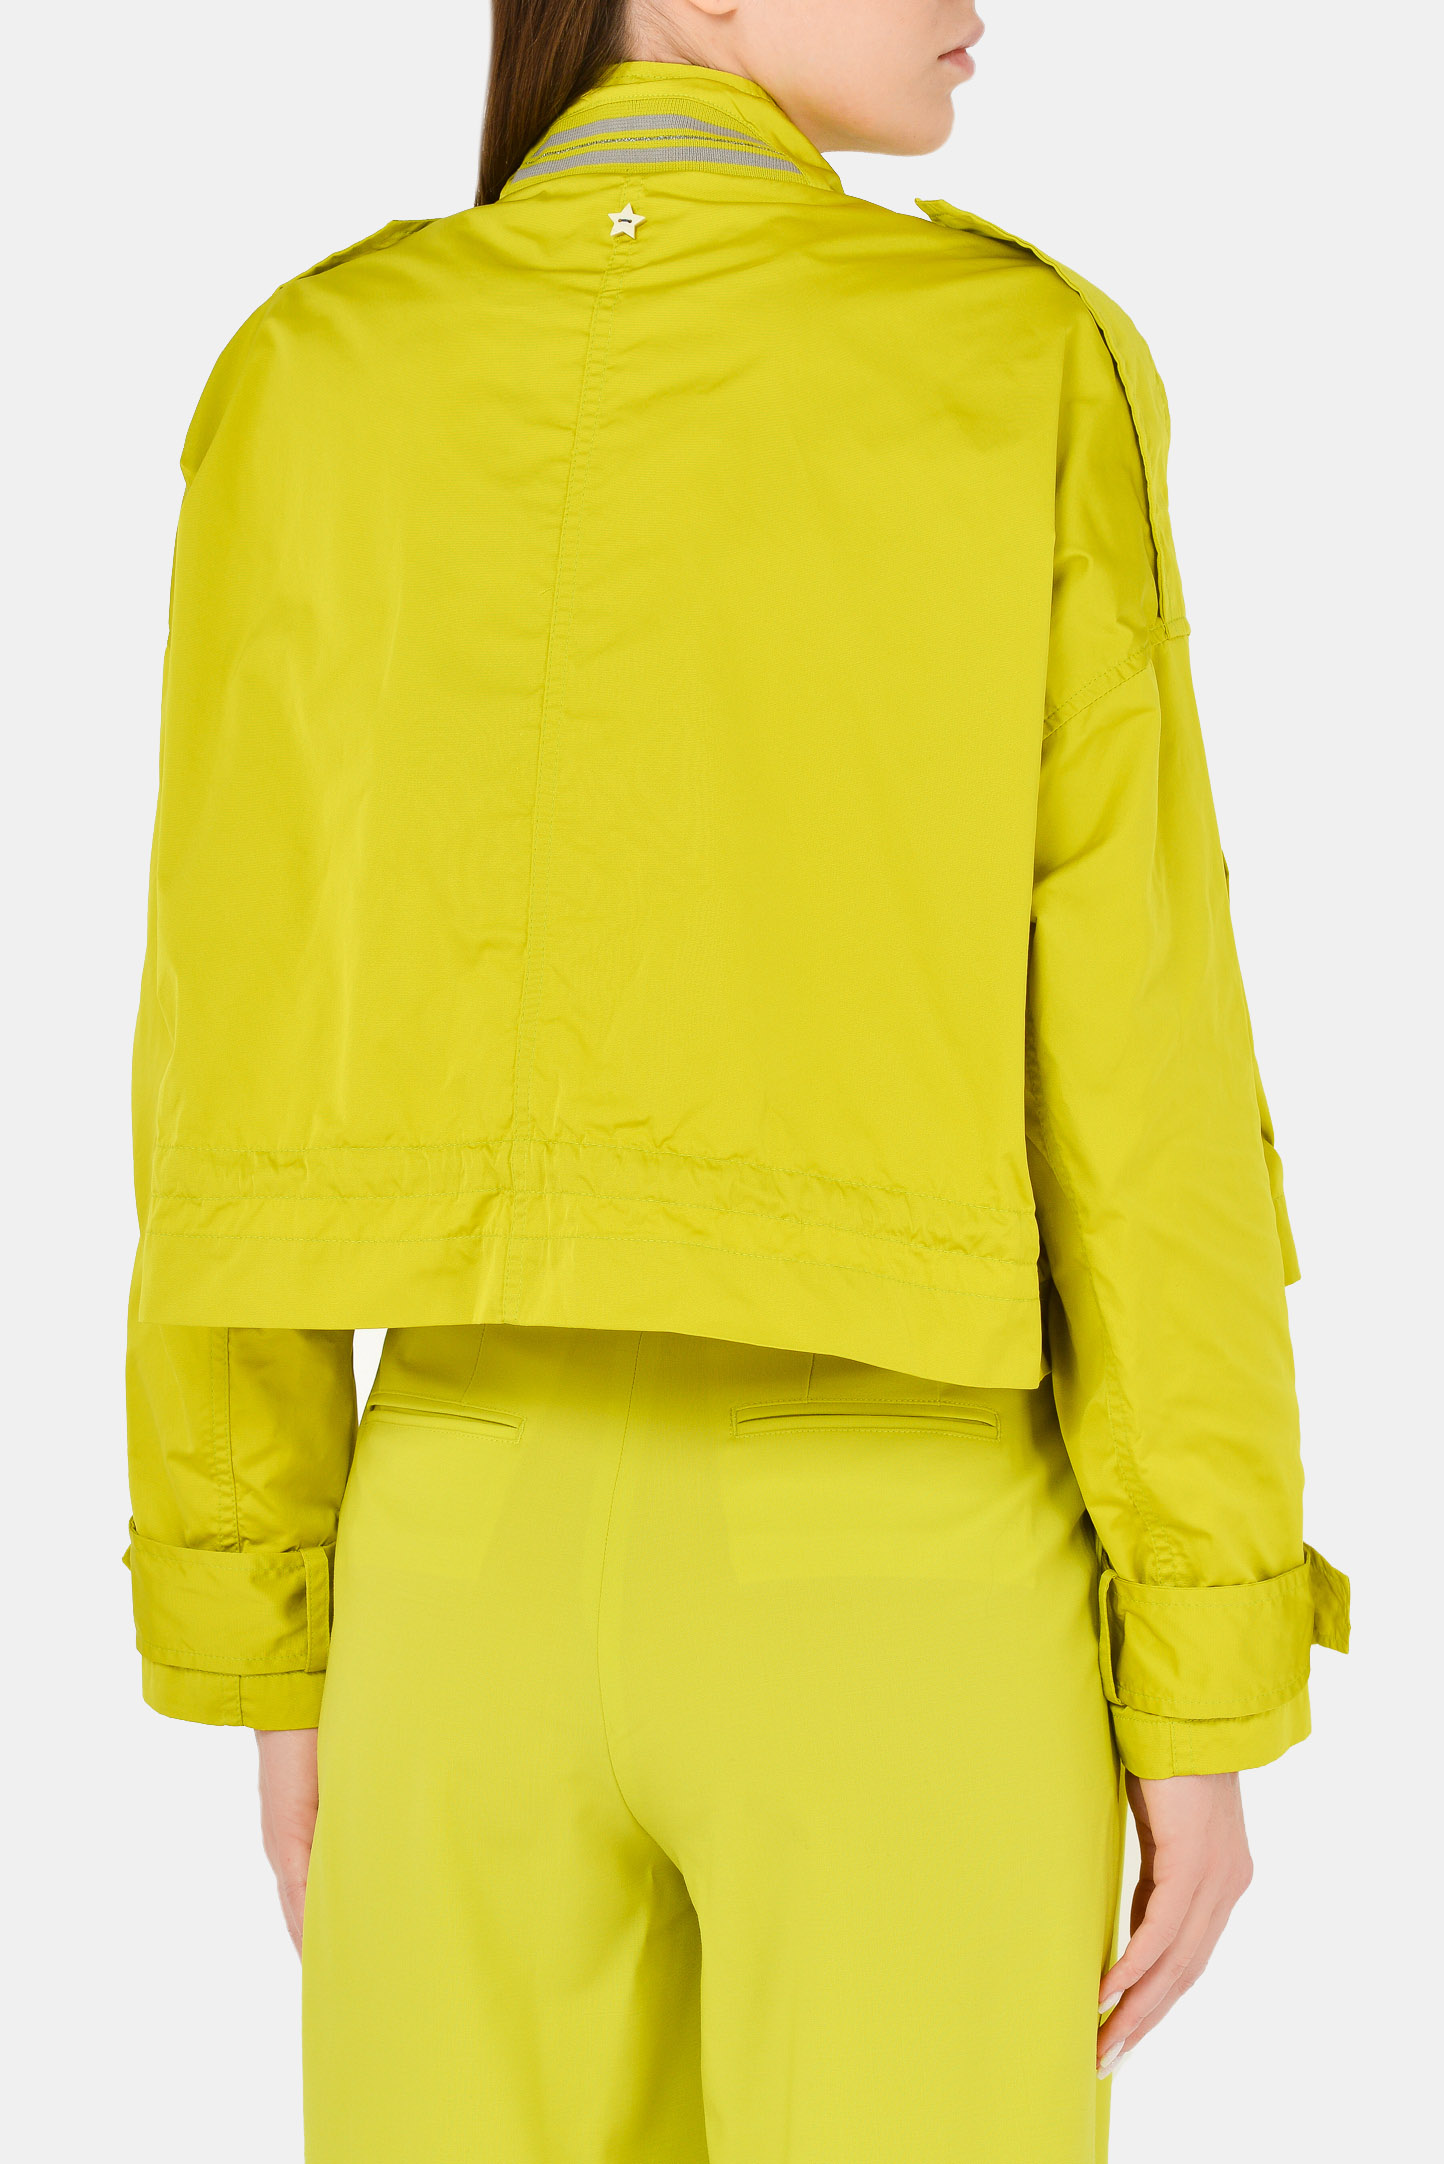 Куртка LORENA ANTONIAZZI P2100CP005/3348, цвет: Зеленый, Женский